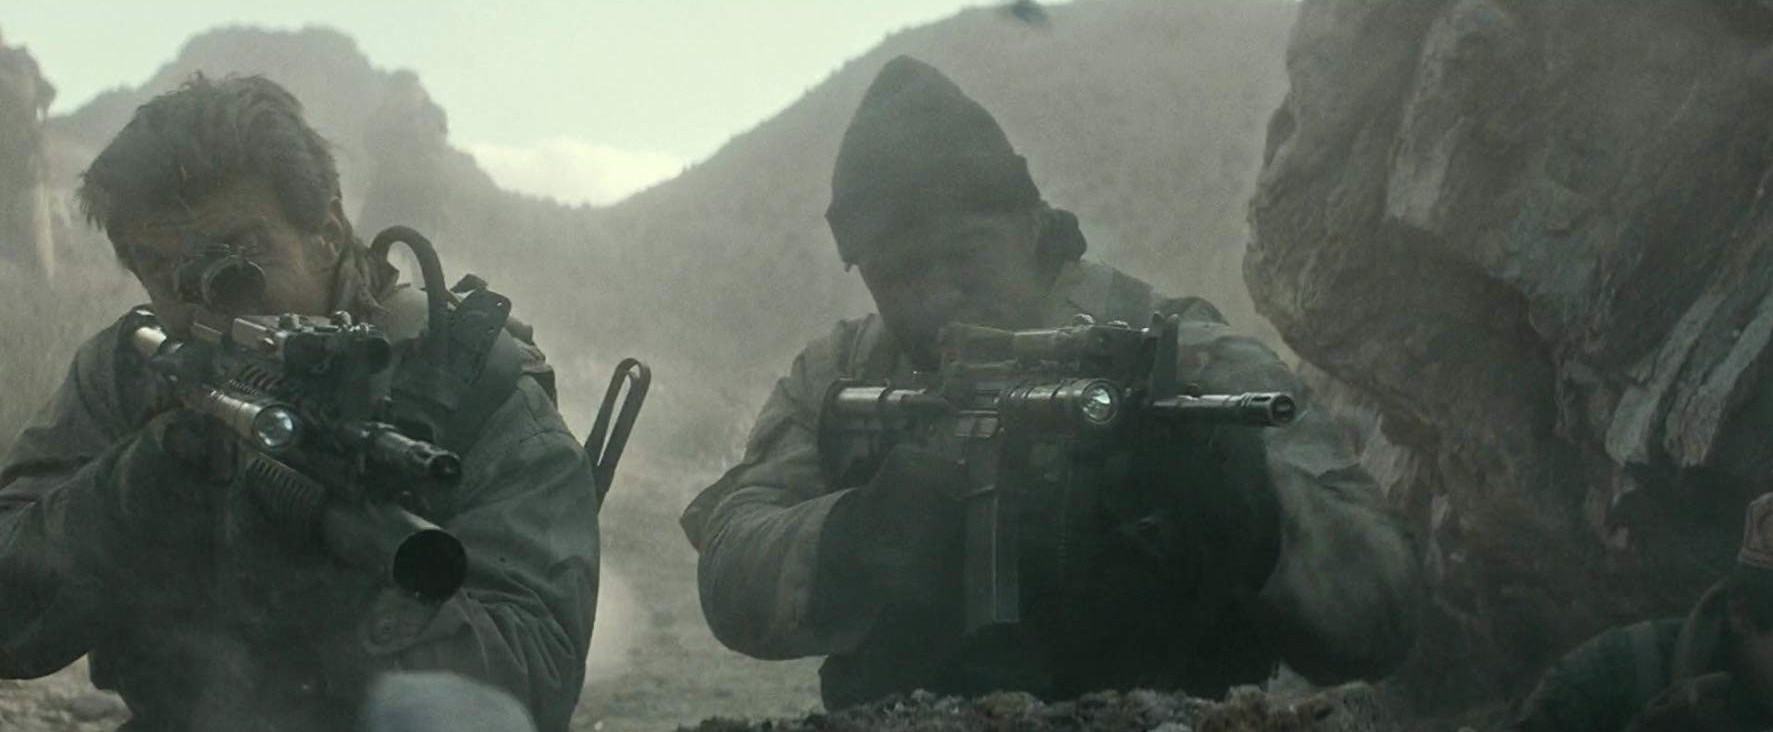 فیلم های جنگی امریکایی در افغانستان